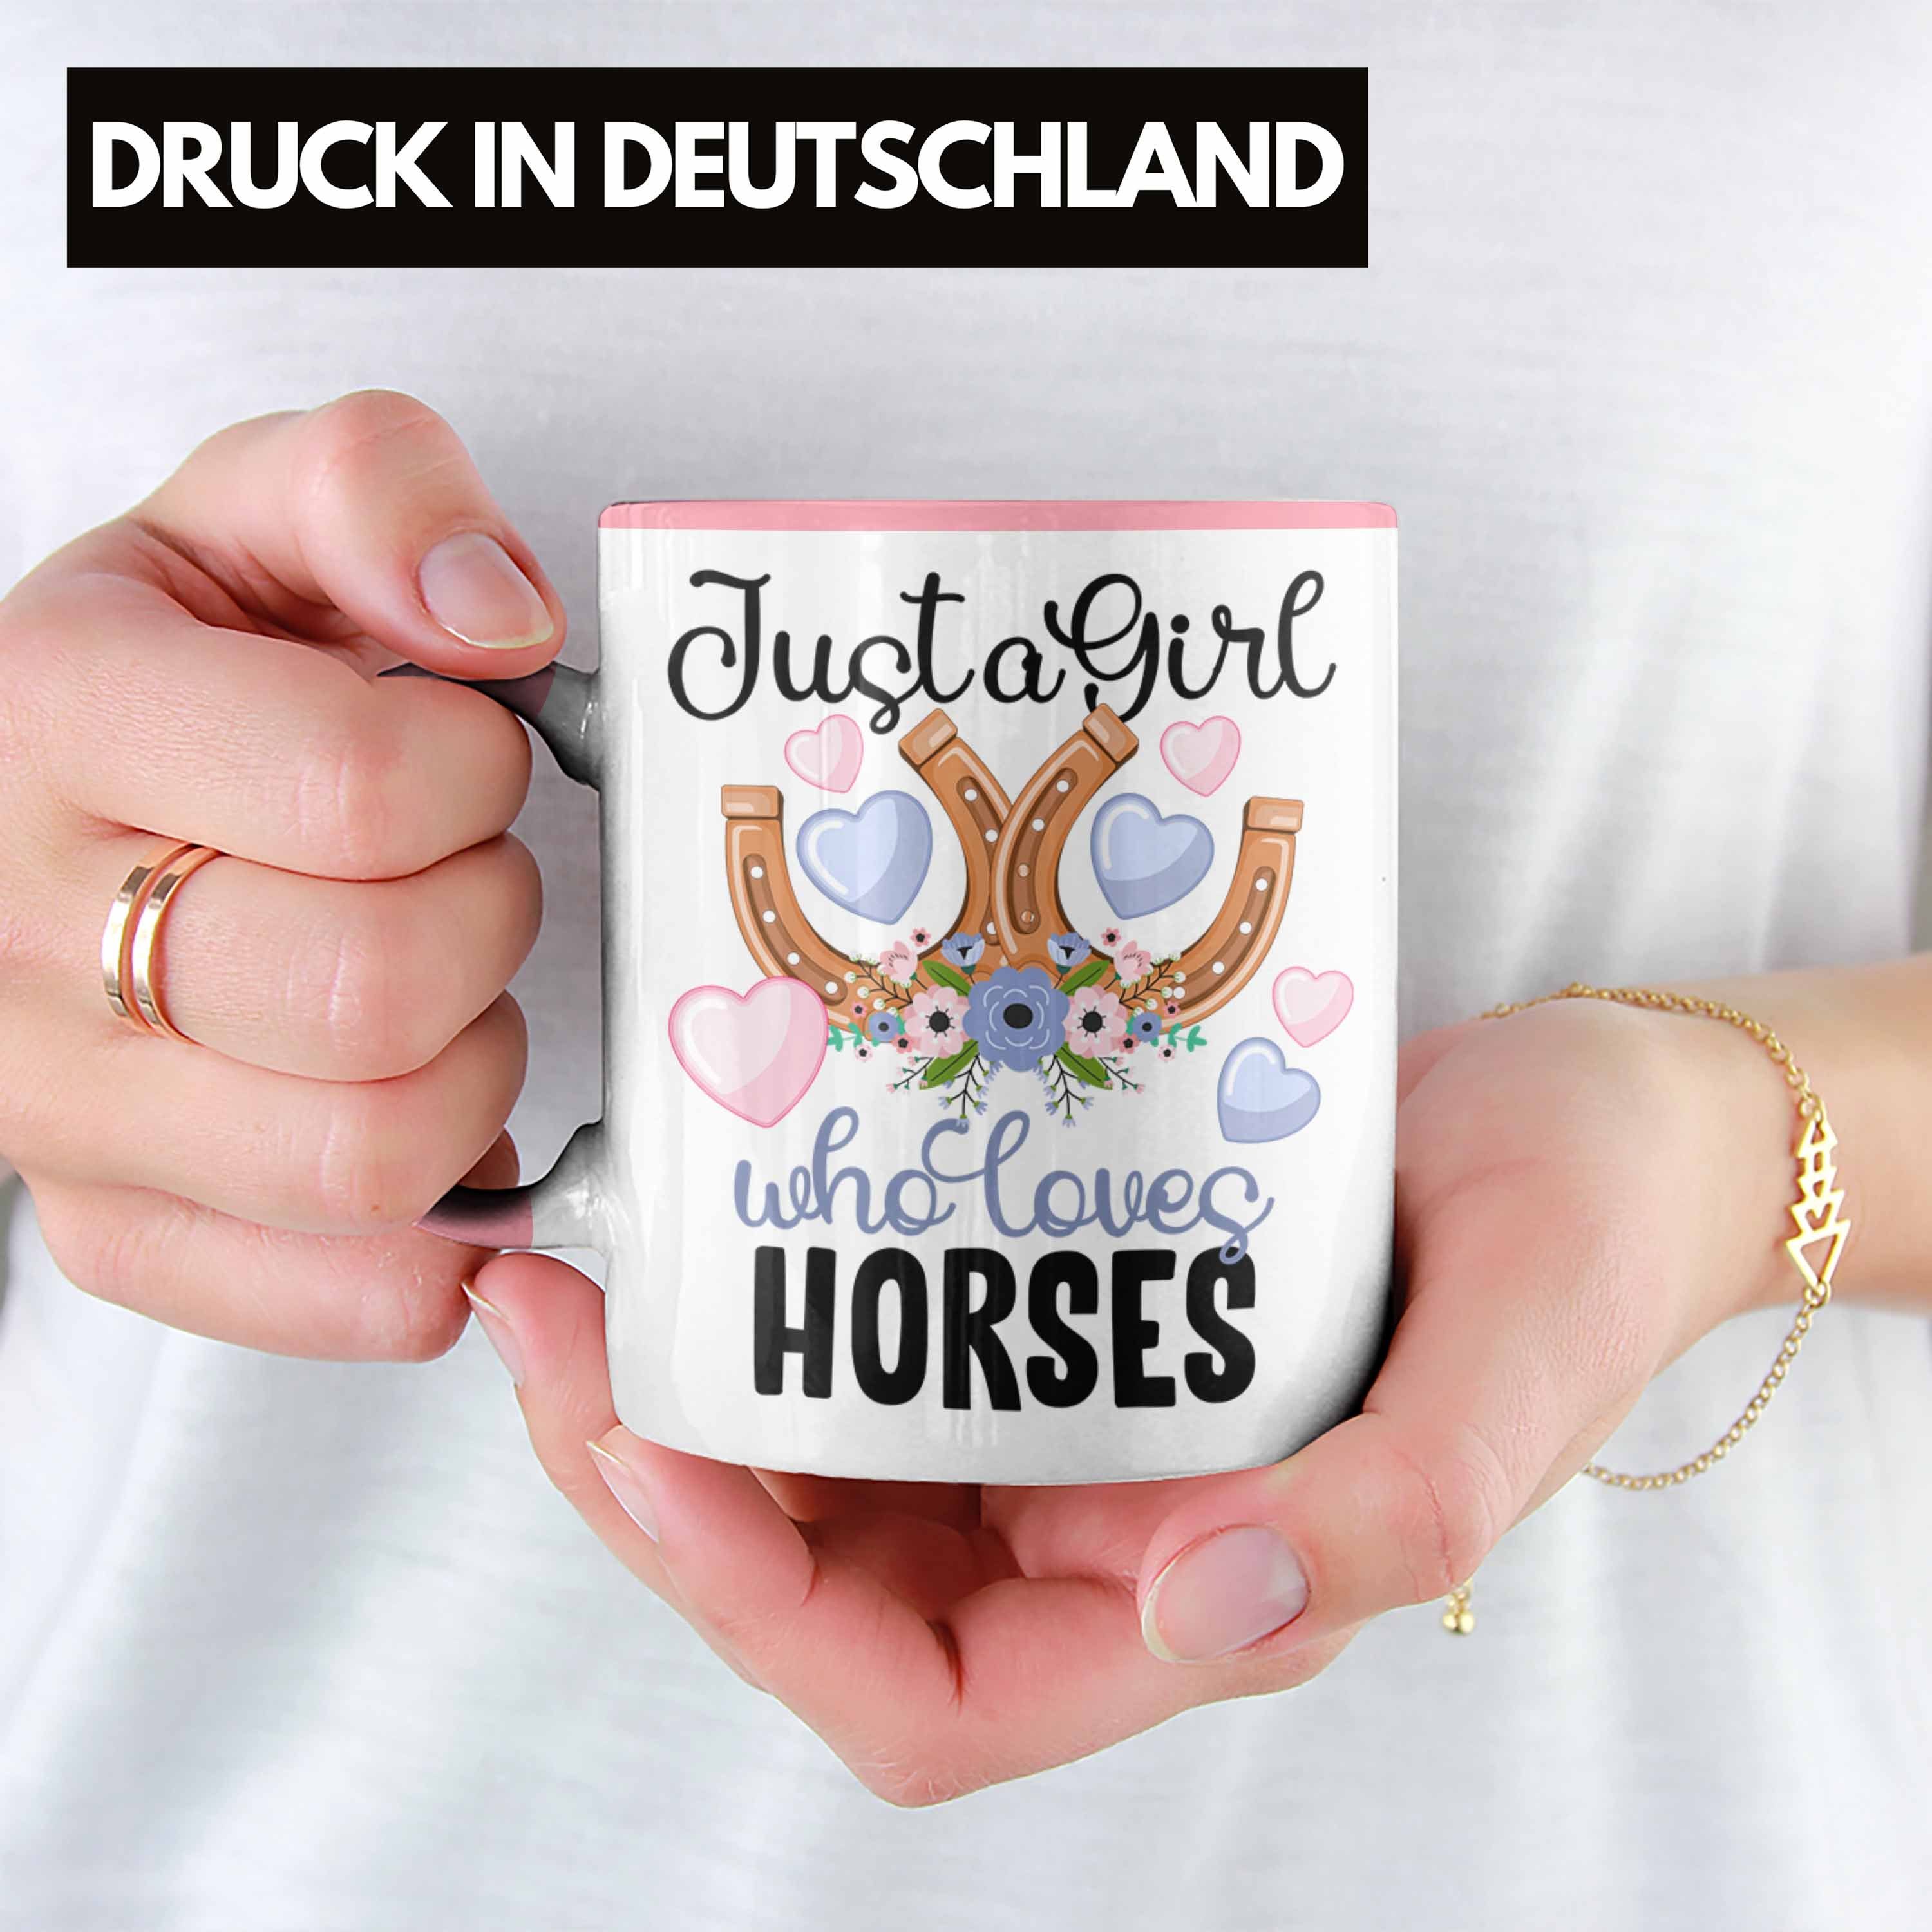 Reiterin Tasse Tasse Reiten für Geschenk Mädchen Trendation Pferde Rosa